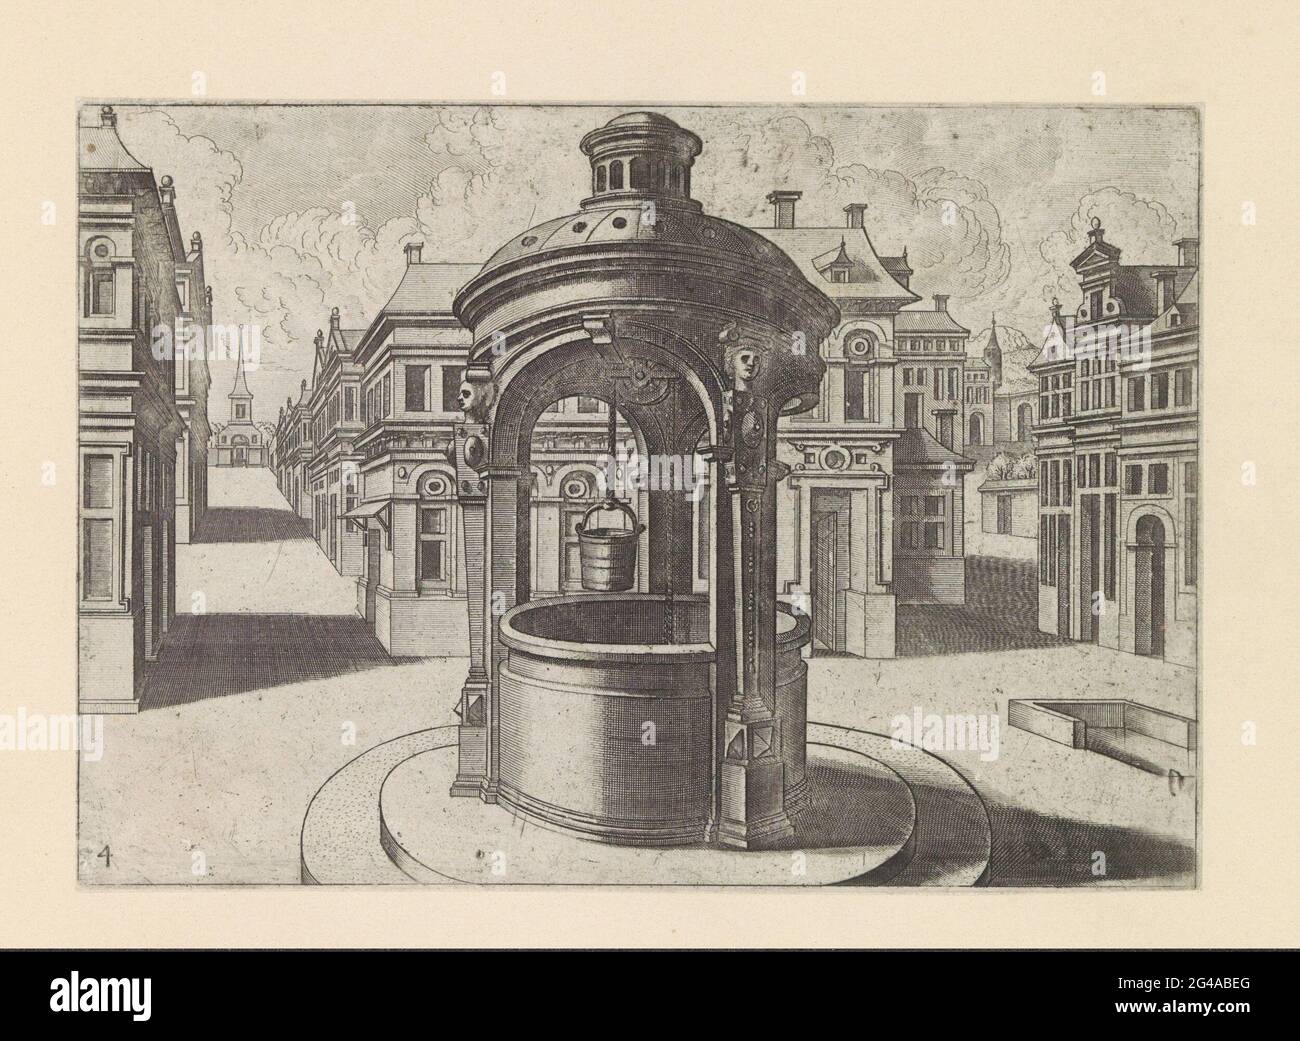 Puits d'eau rond avec marquise en pierre sur une place de la ville; puits  d'eau. Stadsplein avec un puits rond sous un dôme avec une lanterne. Le  dôme est basé sur trois